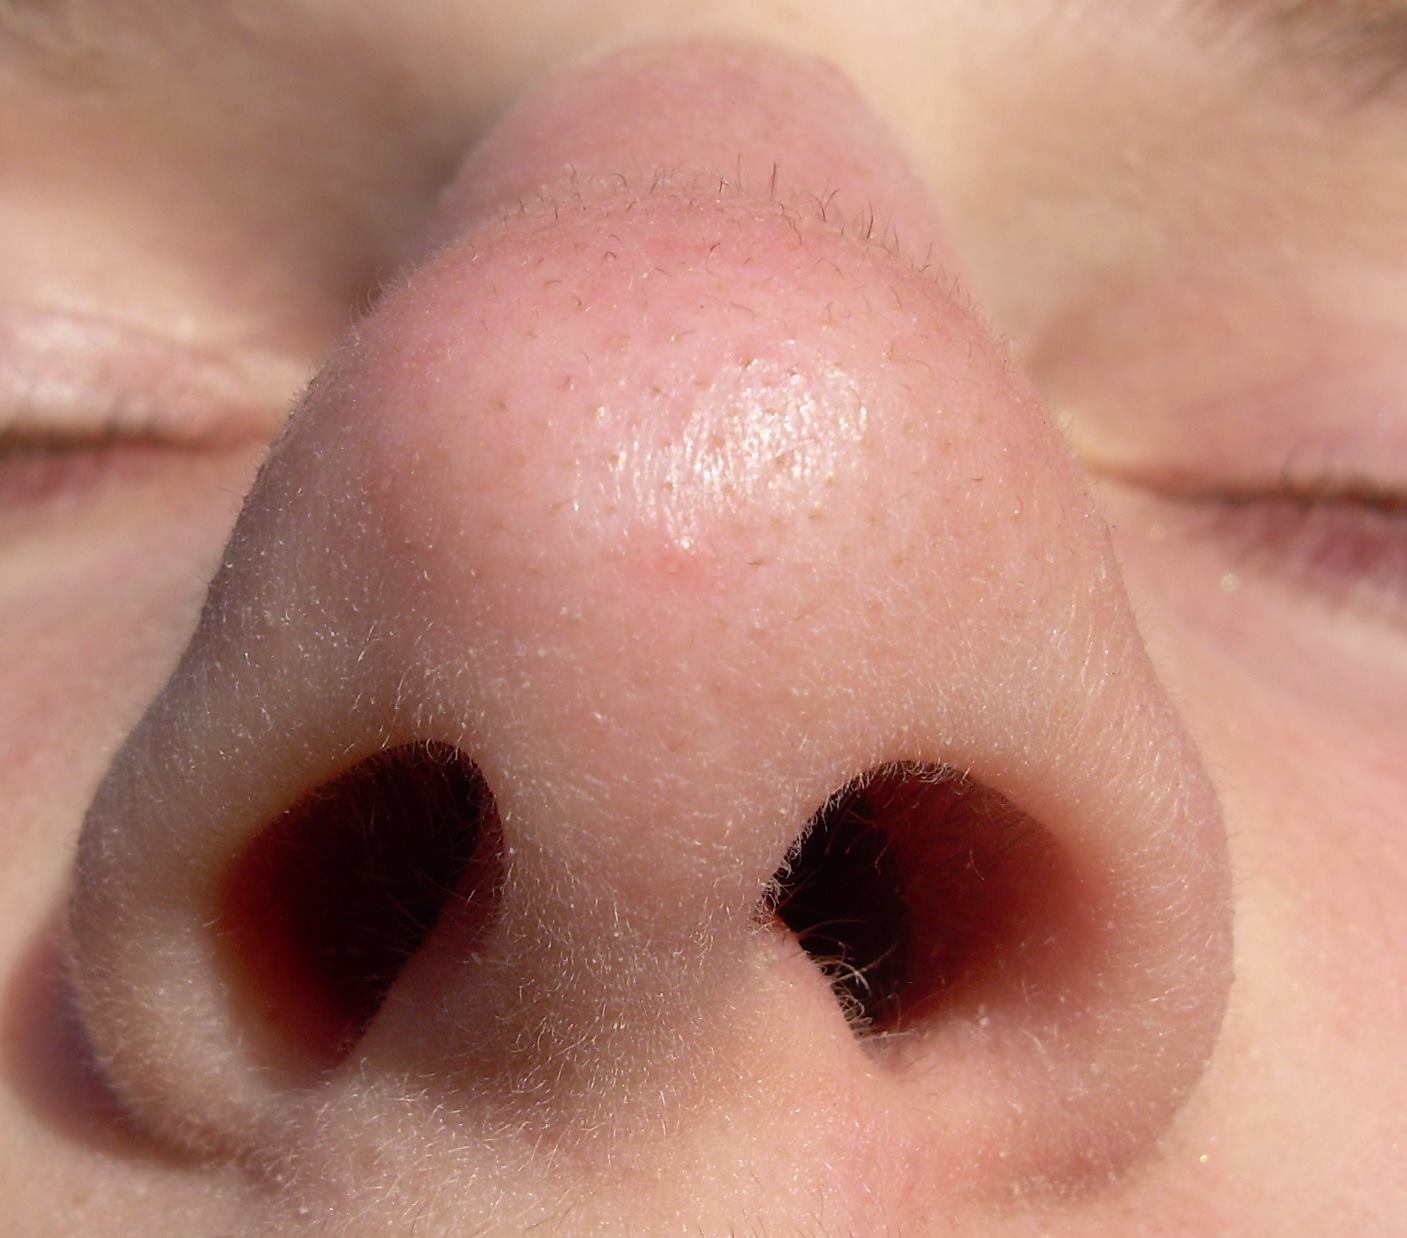 Mocne zbliżenie twarzy na któym widać dziurki od nosa i fragment zamkniętych oczu